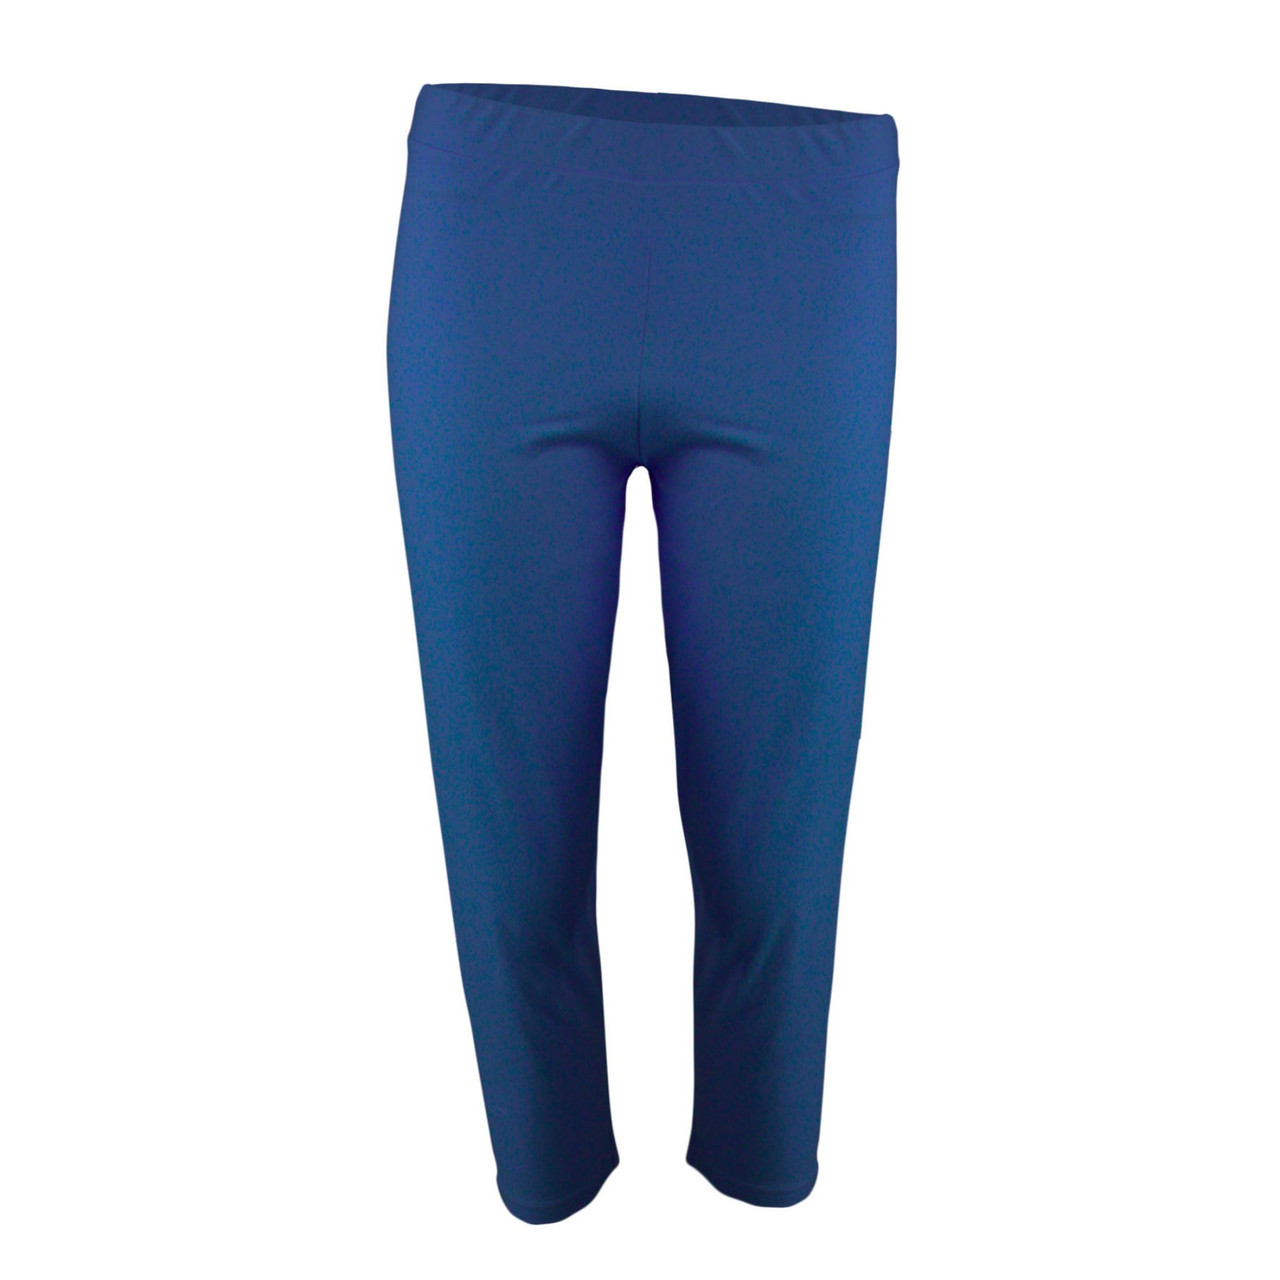 Daphne Blue Solid Women's Adult Knit Capri Leggings - 2XL